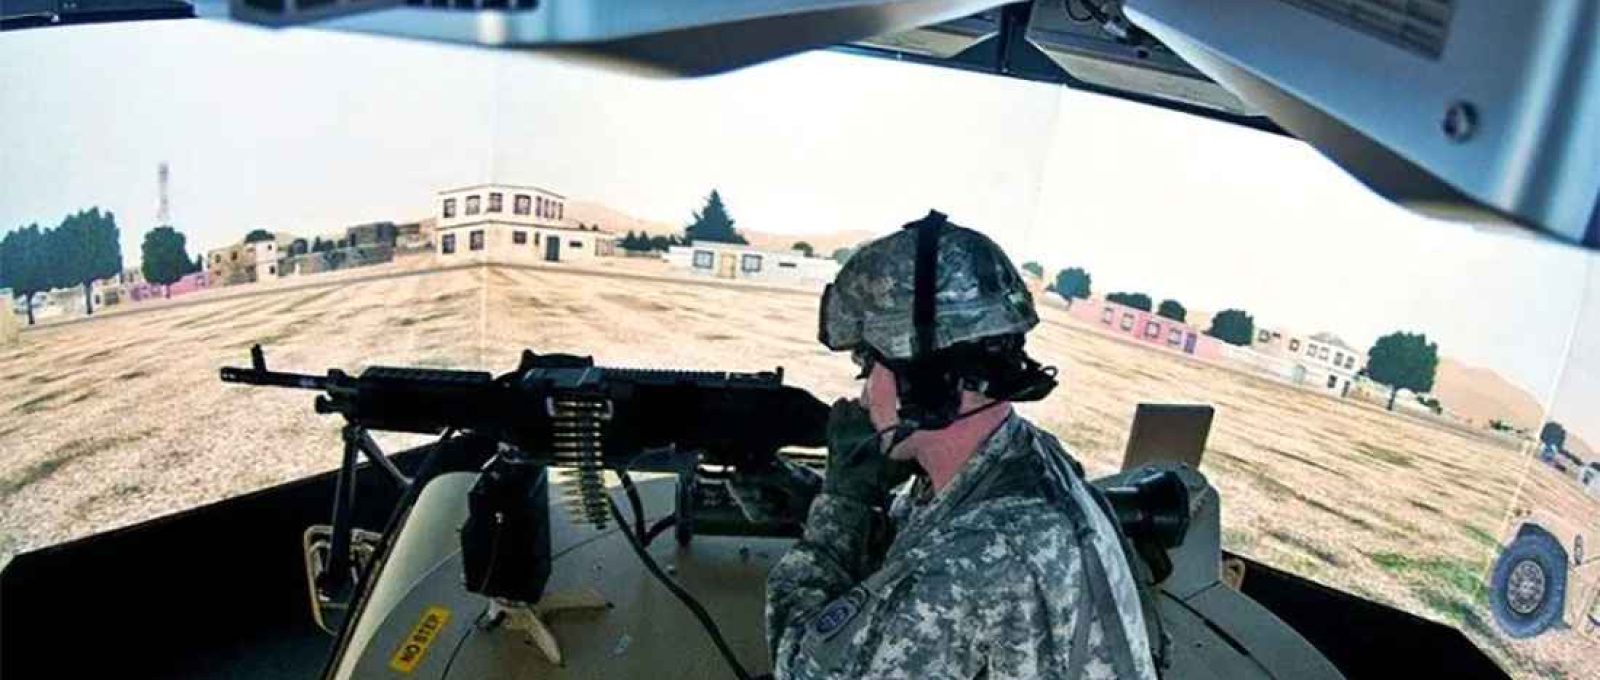 O treinamento virtual tem como benefícios ser econômico e fácil de aplicar (US Army).